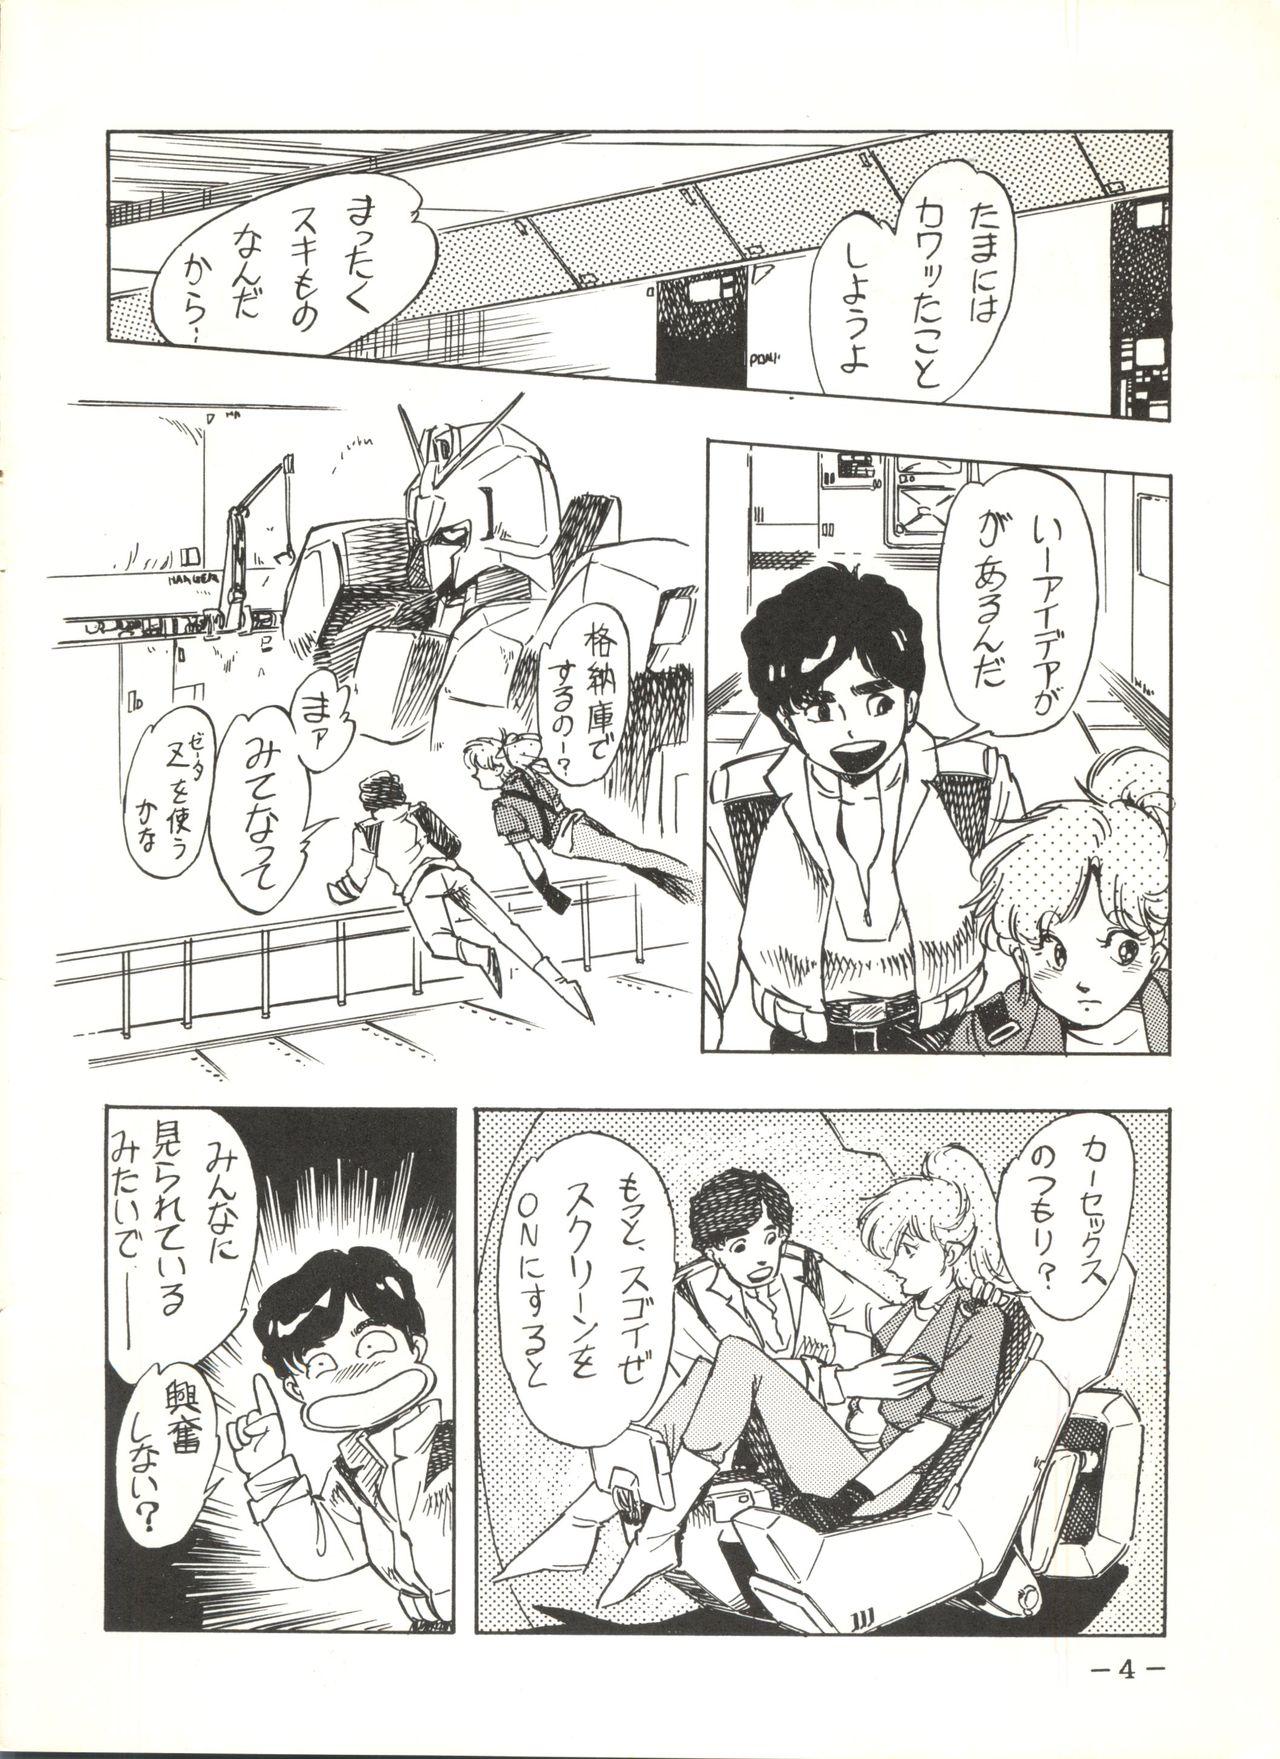 Exhibitionist Sukebe Janai 3 - Gundam zz Putinha - Page 4